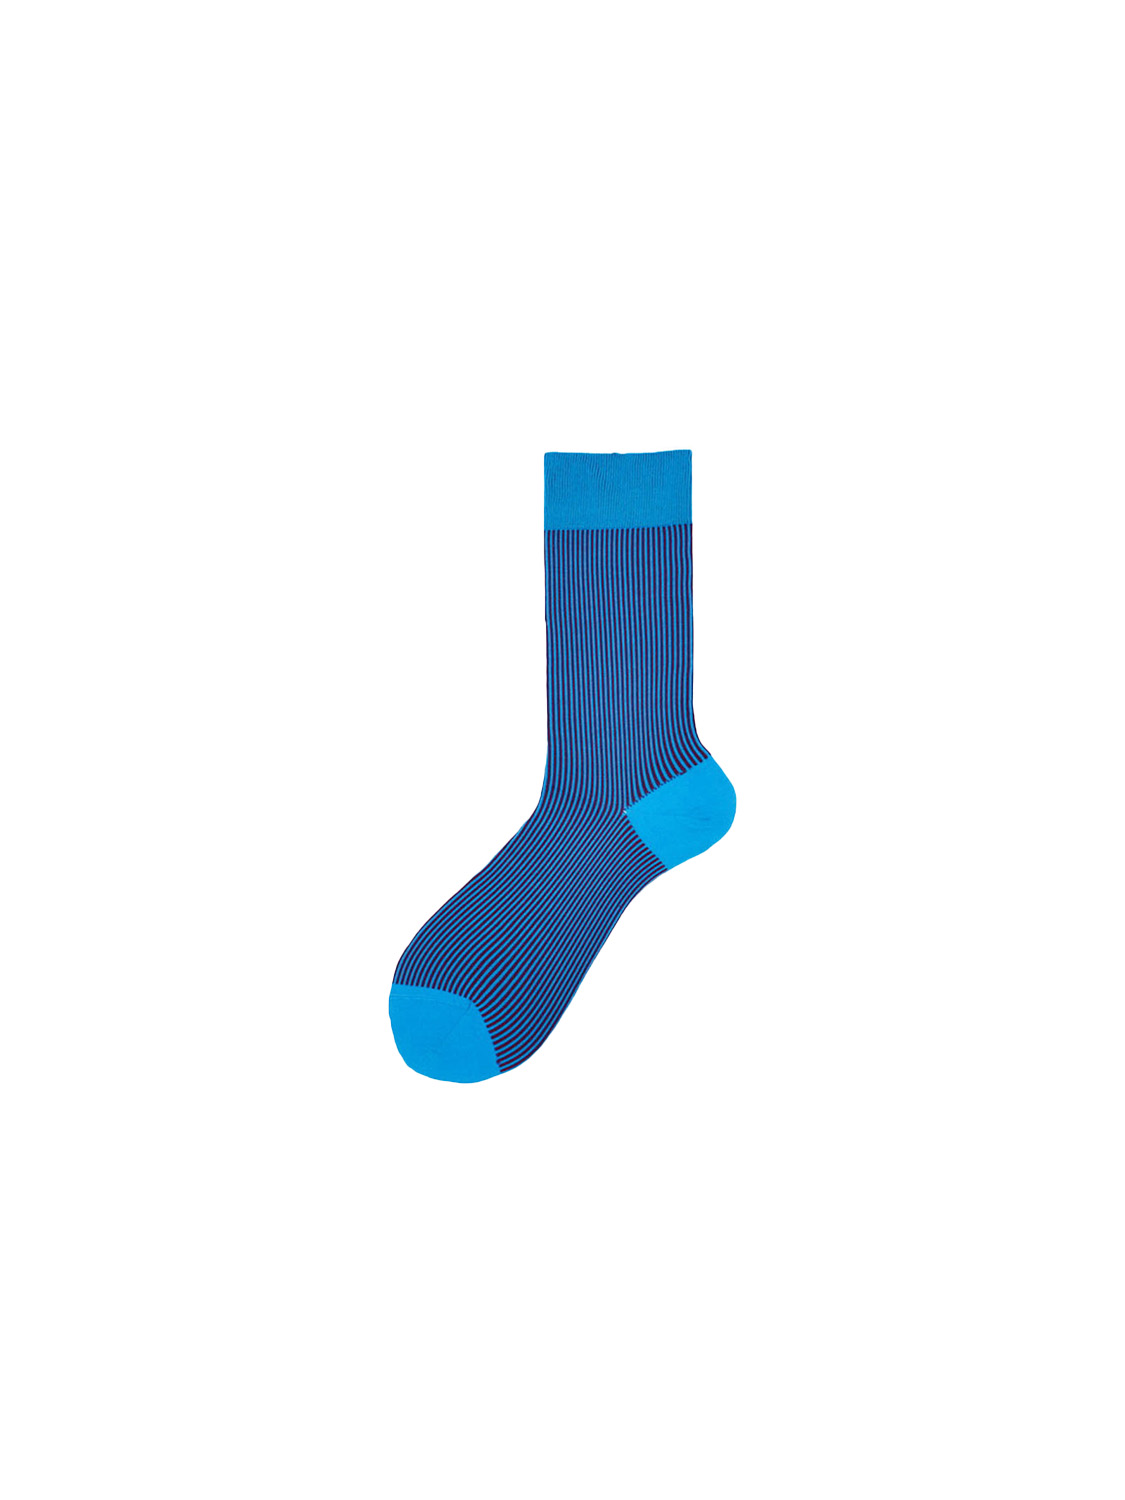 Alto Max – Kurze Baumwoll-Socken mit Muster   blau Taille unique